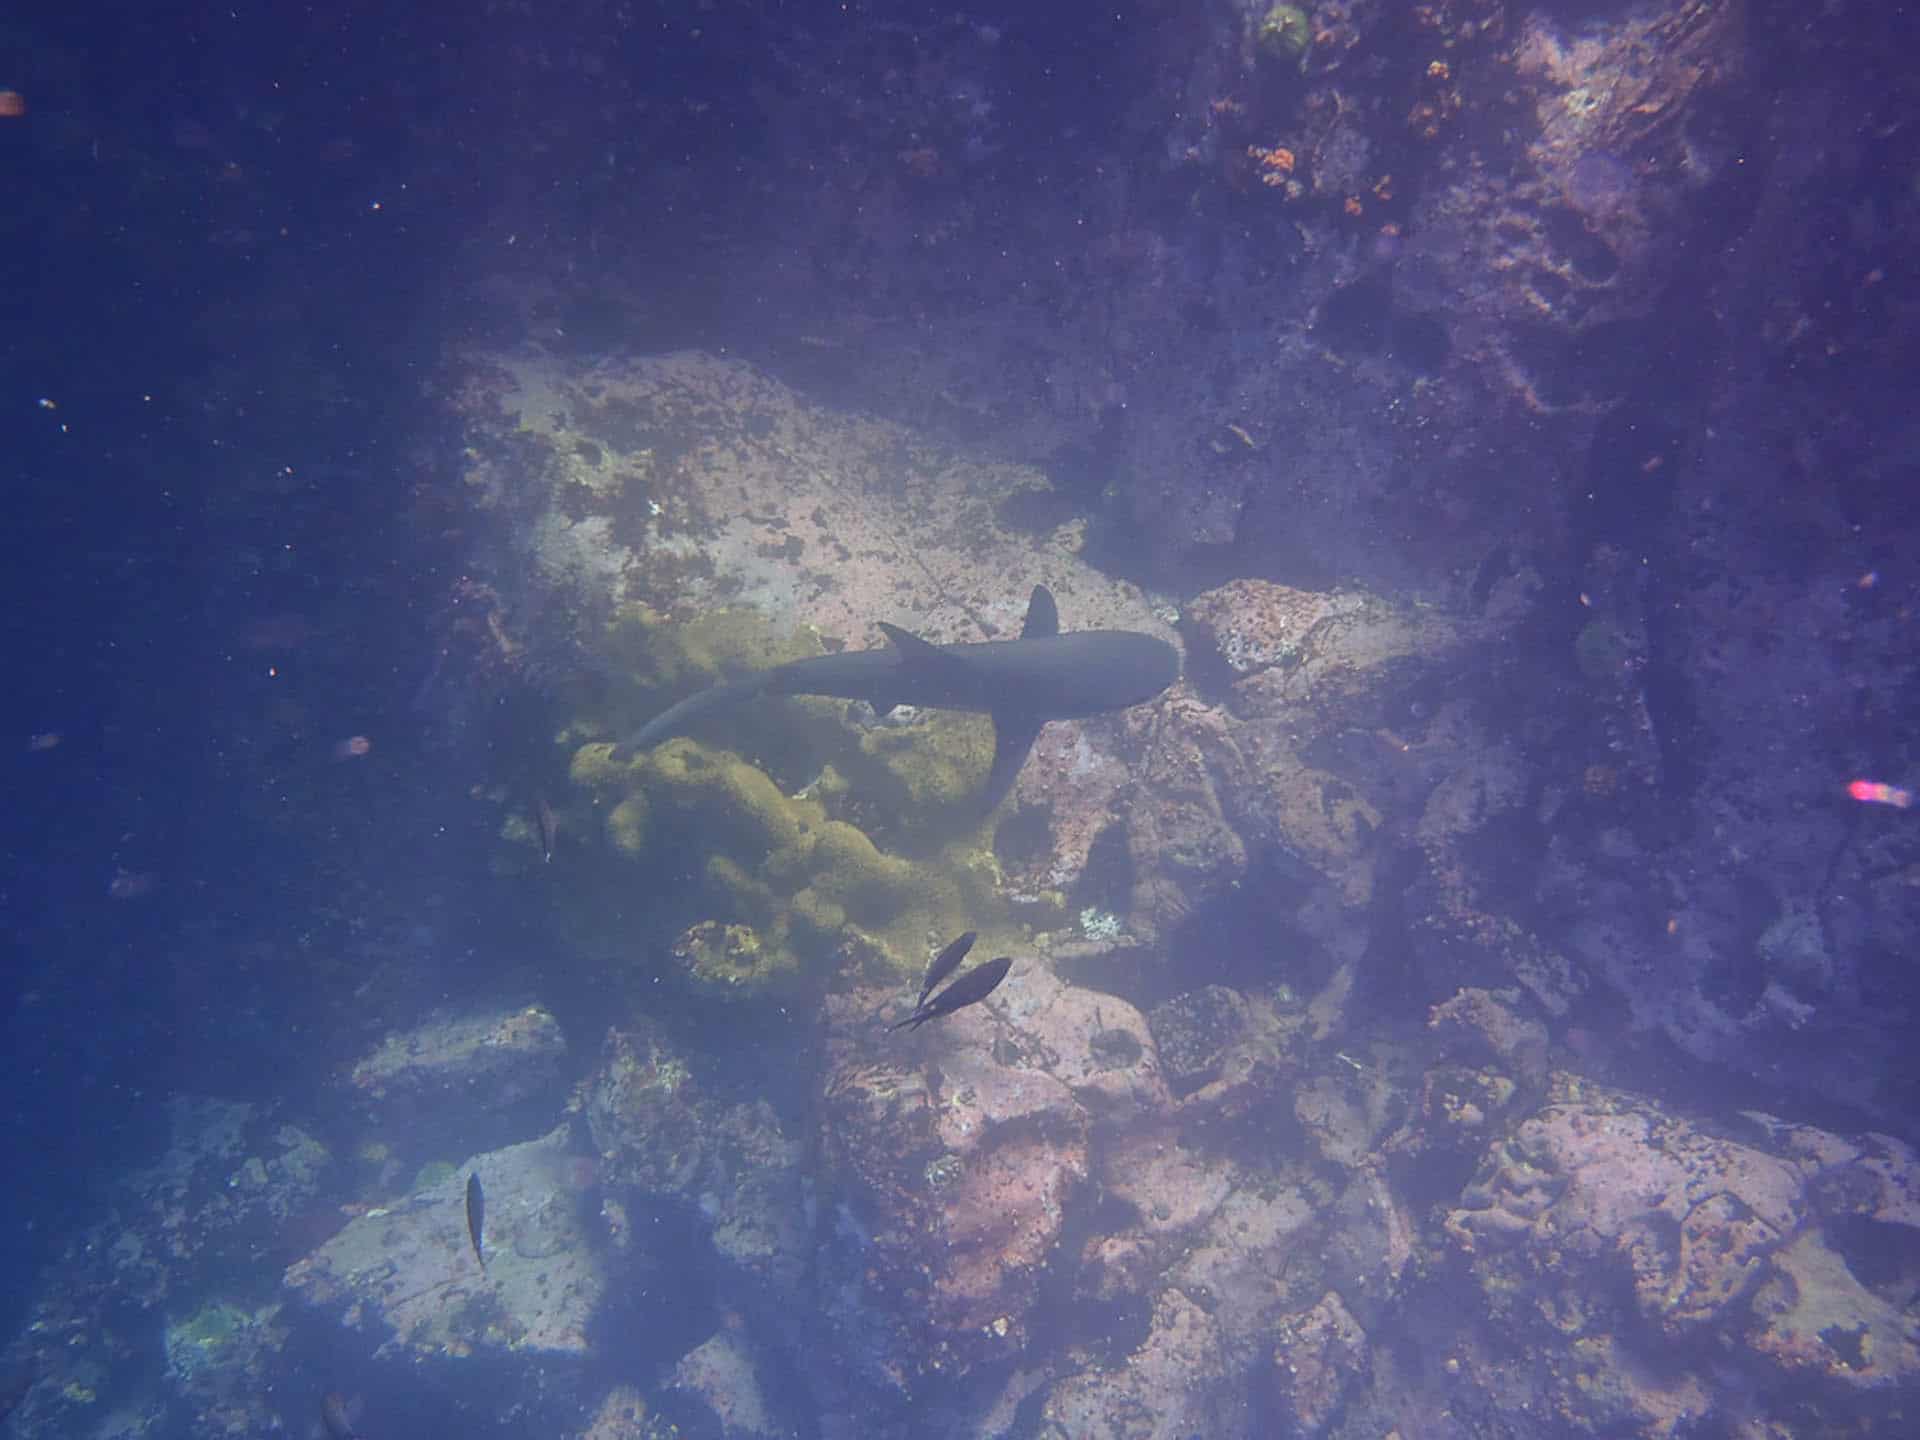 galapagos shark - species in galapagos islands